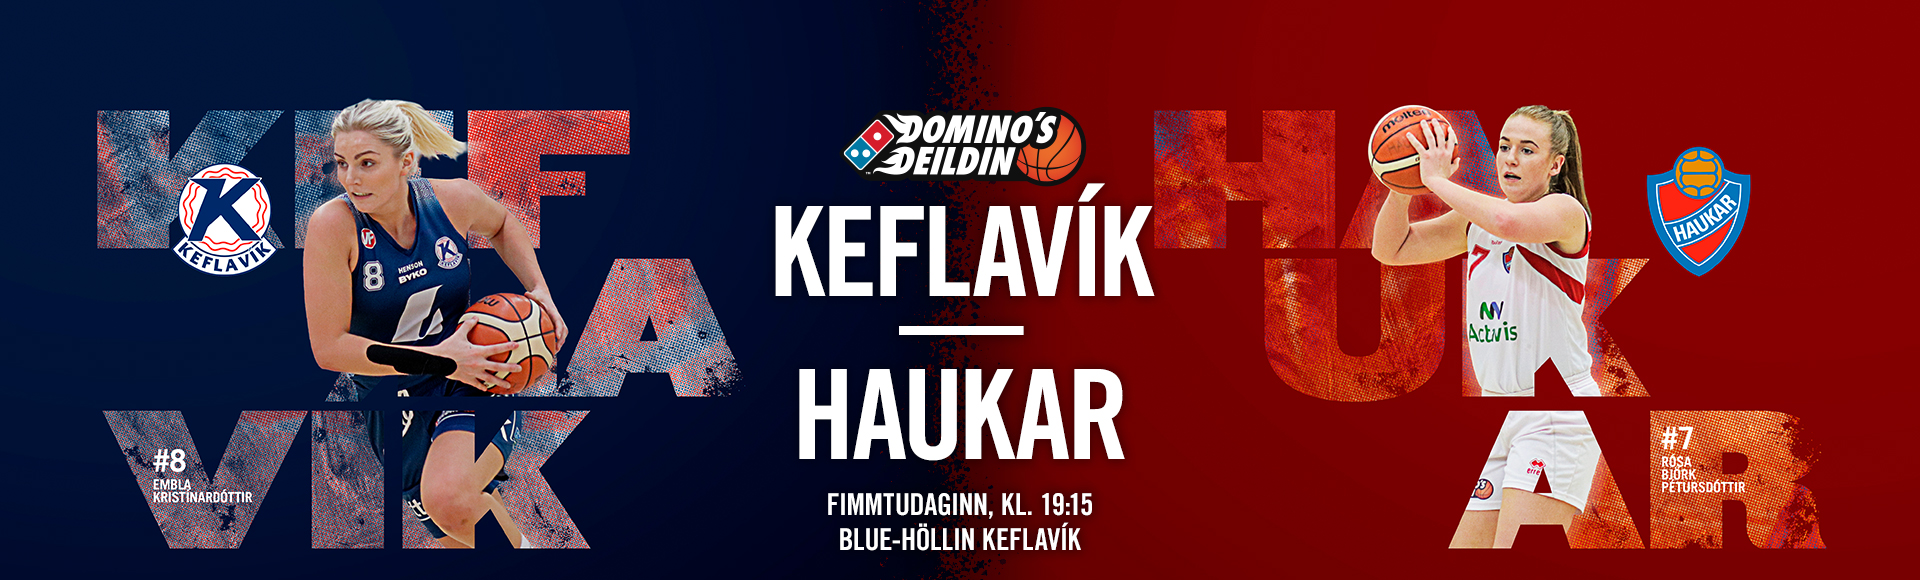 Domino's deild kvenna í kvöld · Keflavík-Haukar